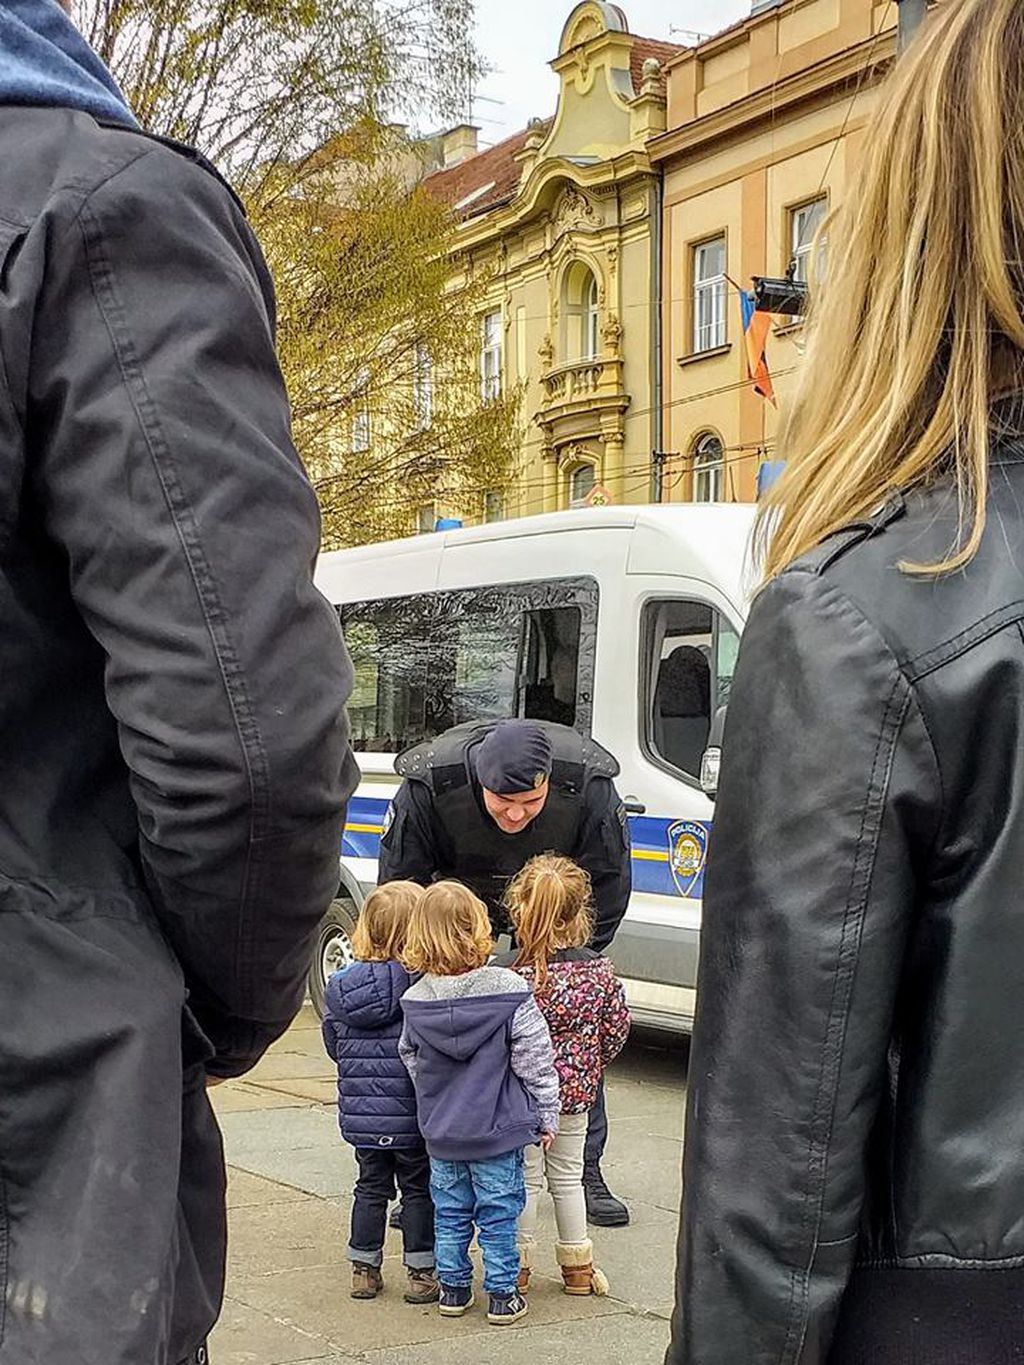 Prizor nasmiješenog policajca koji razgovara s djecom raznježio je mnoge